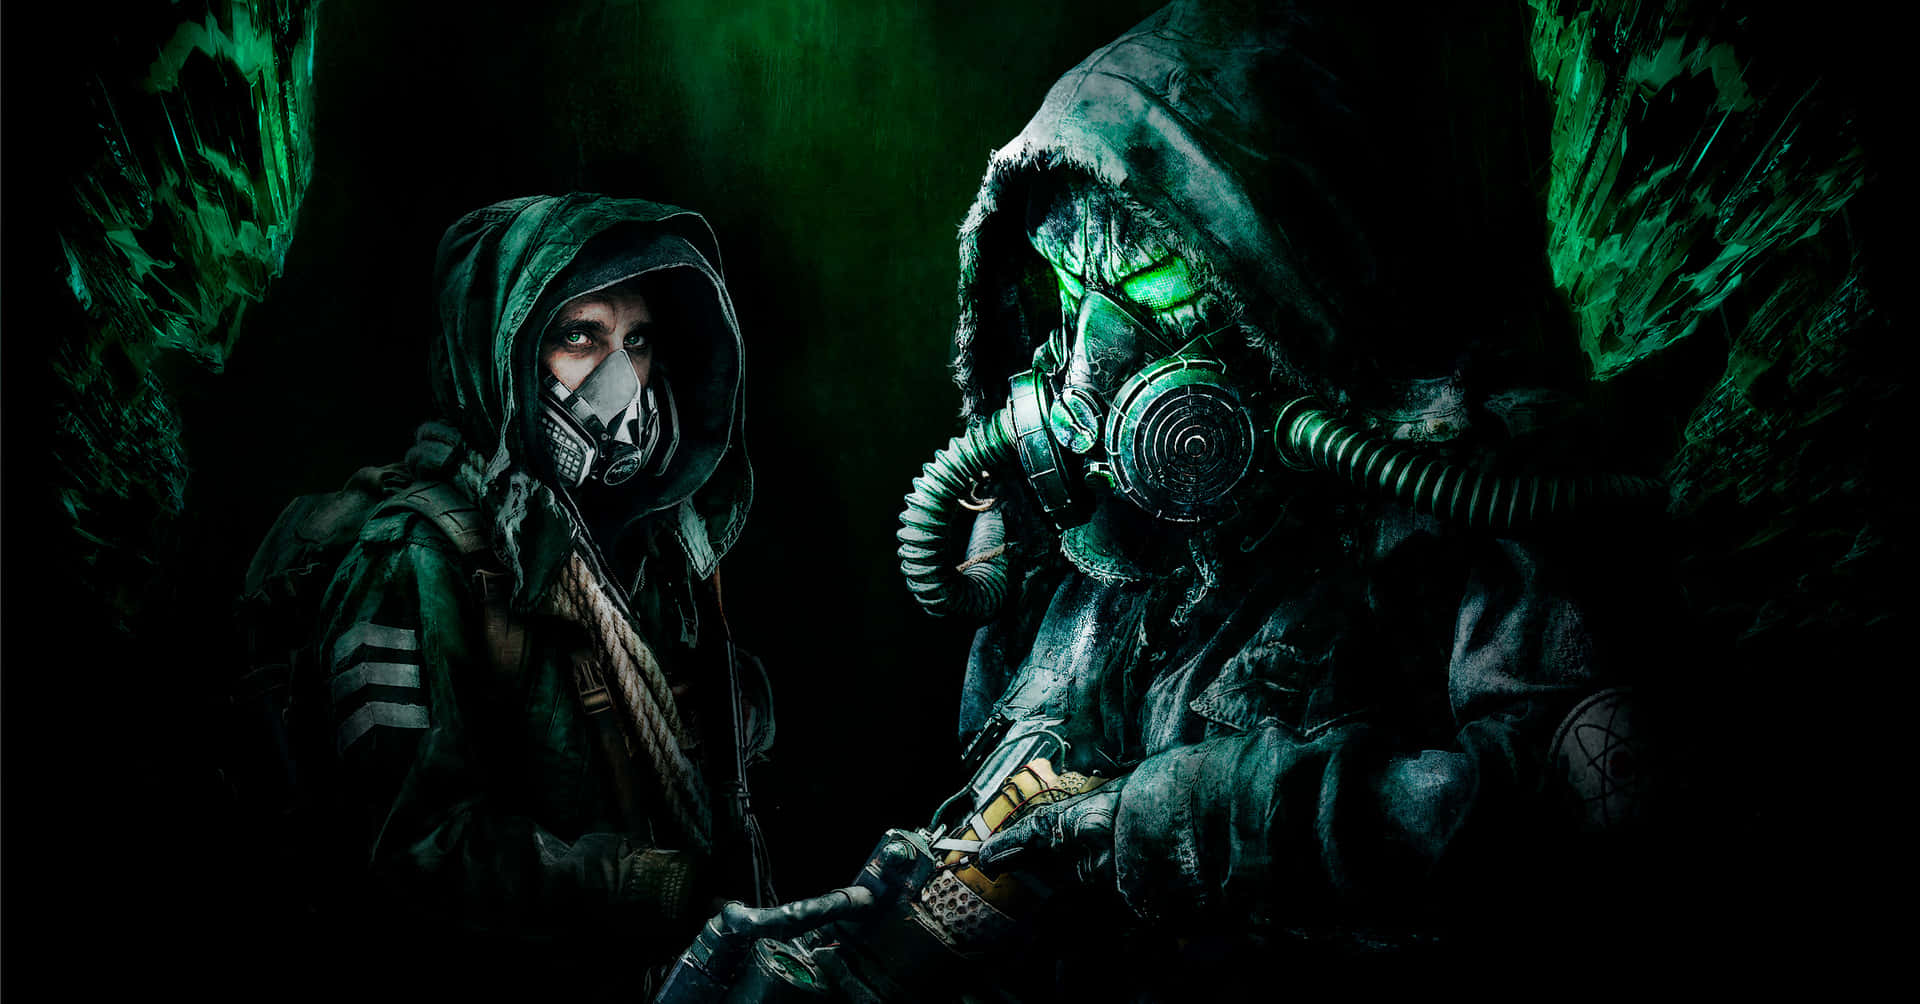 Zweipersonen In Gasmasken Stehen Nebeneinander. Wallpaper